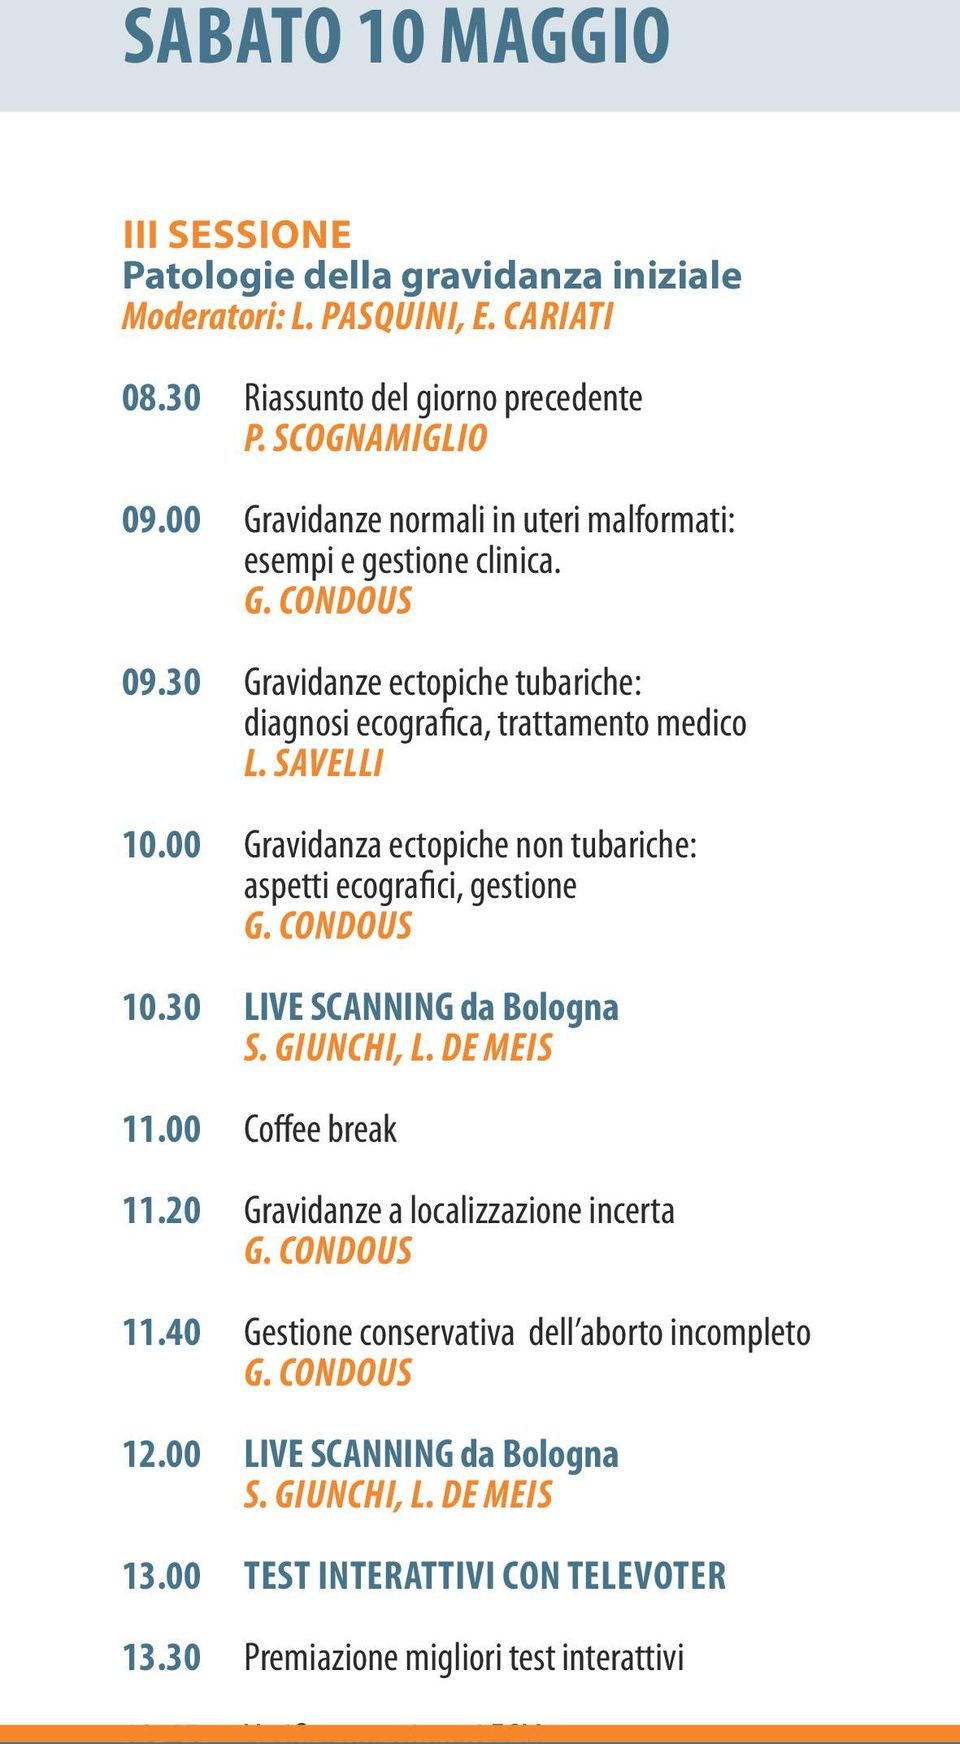 00 Gravidanza ectopiche non tubariche: aspetti ecografici, gestione 10.30 LIVE SCANNING da Bologna S. GIUNCHI, L. DE MEIS 11.00 Coffee break 11.